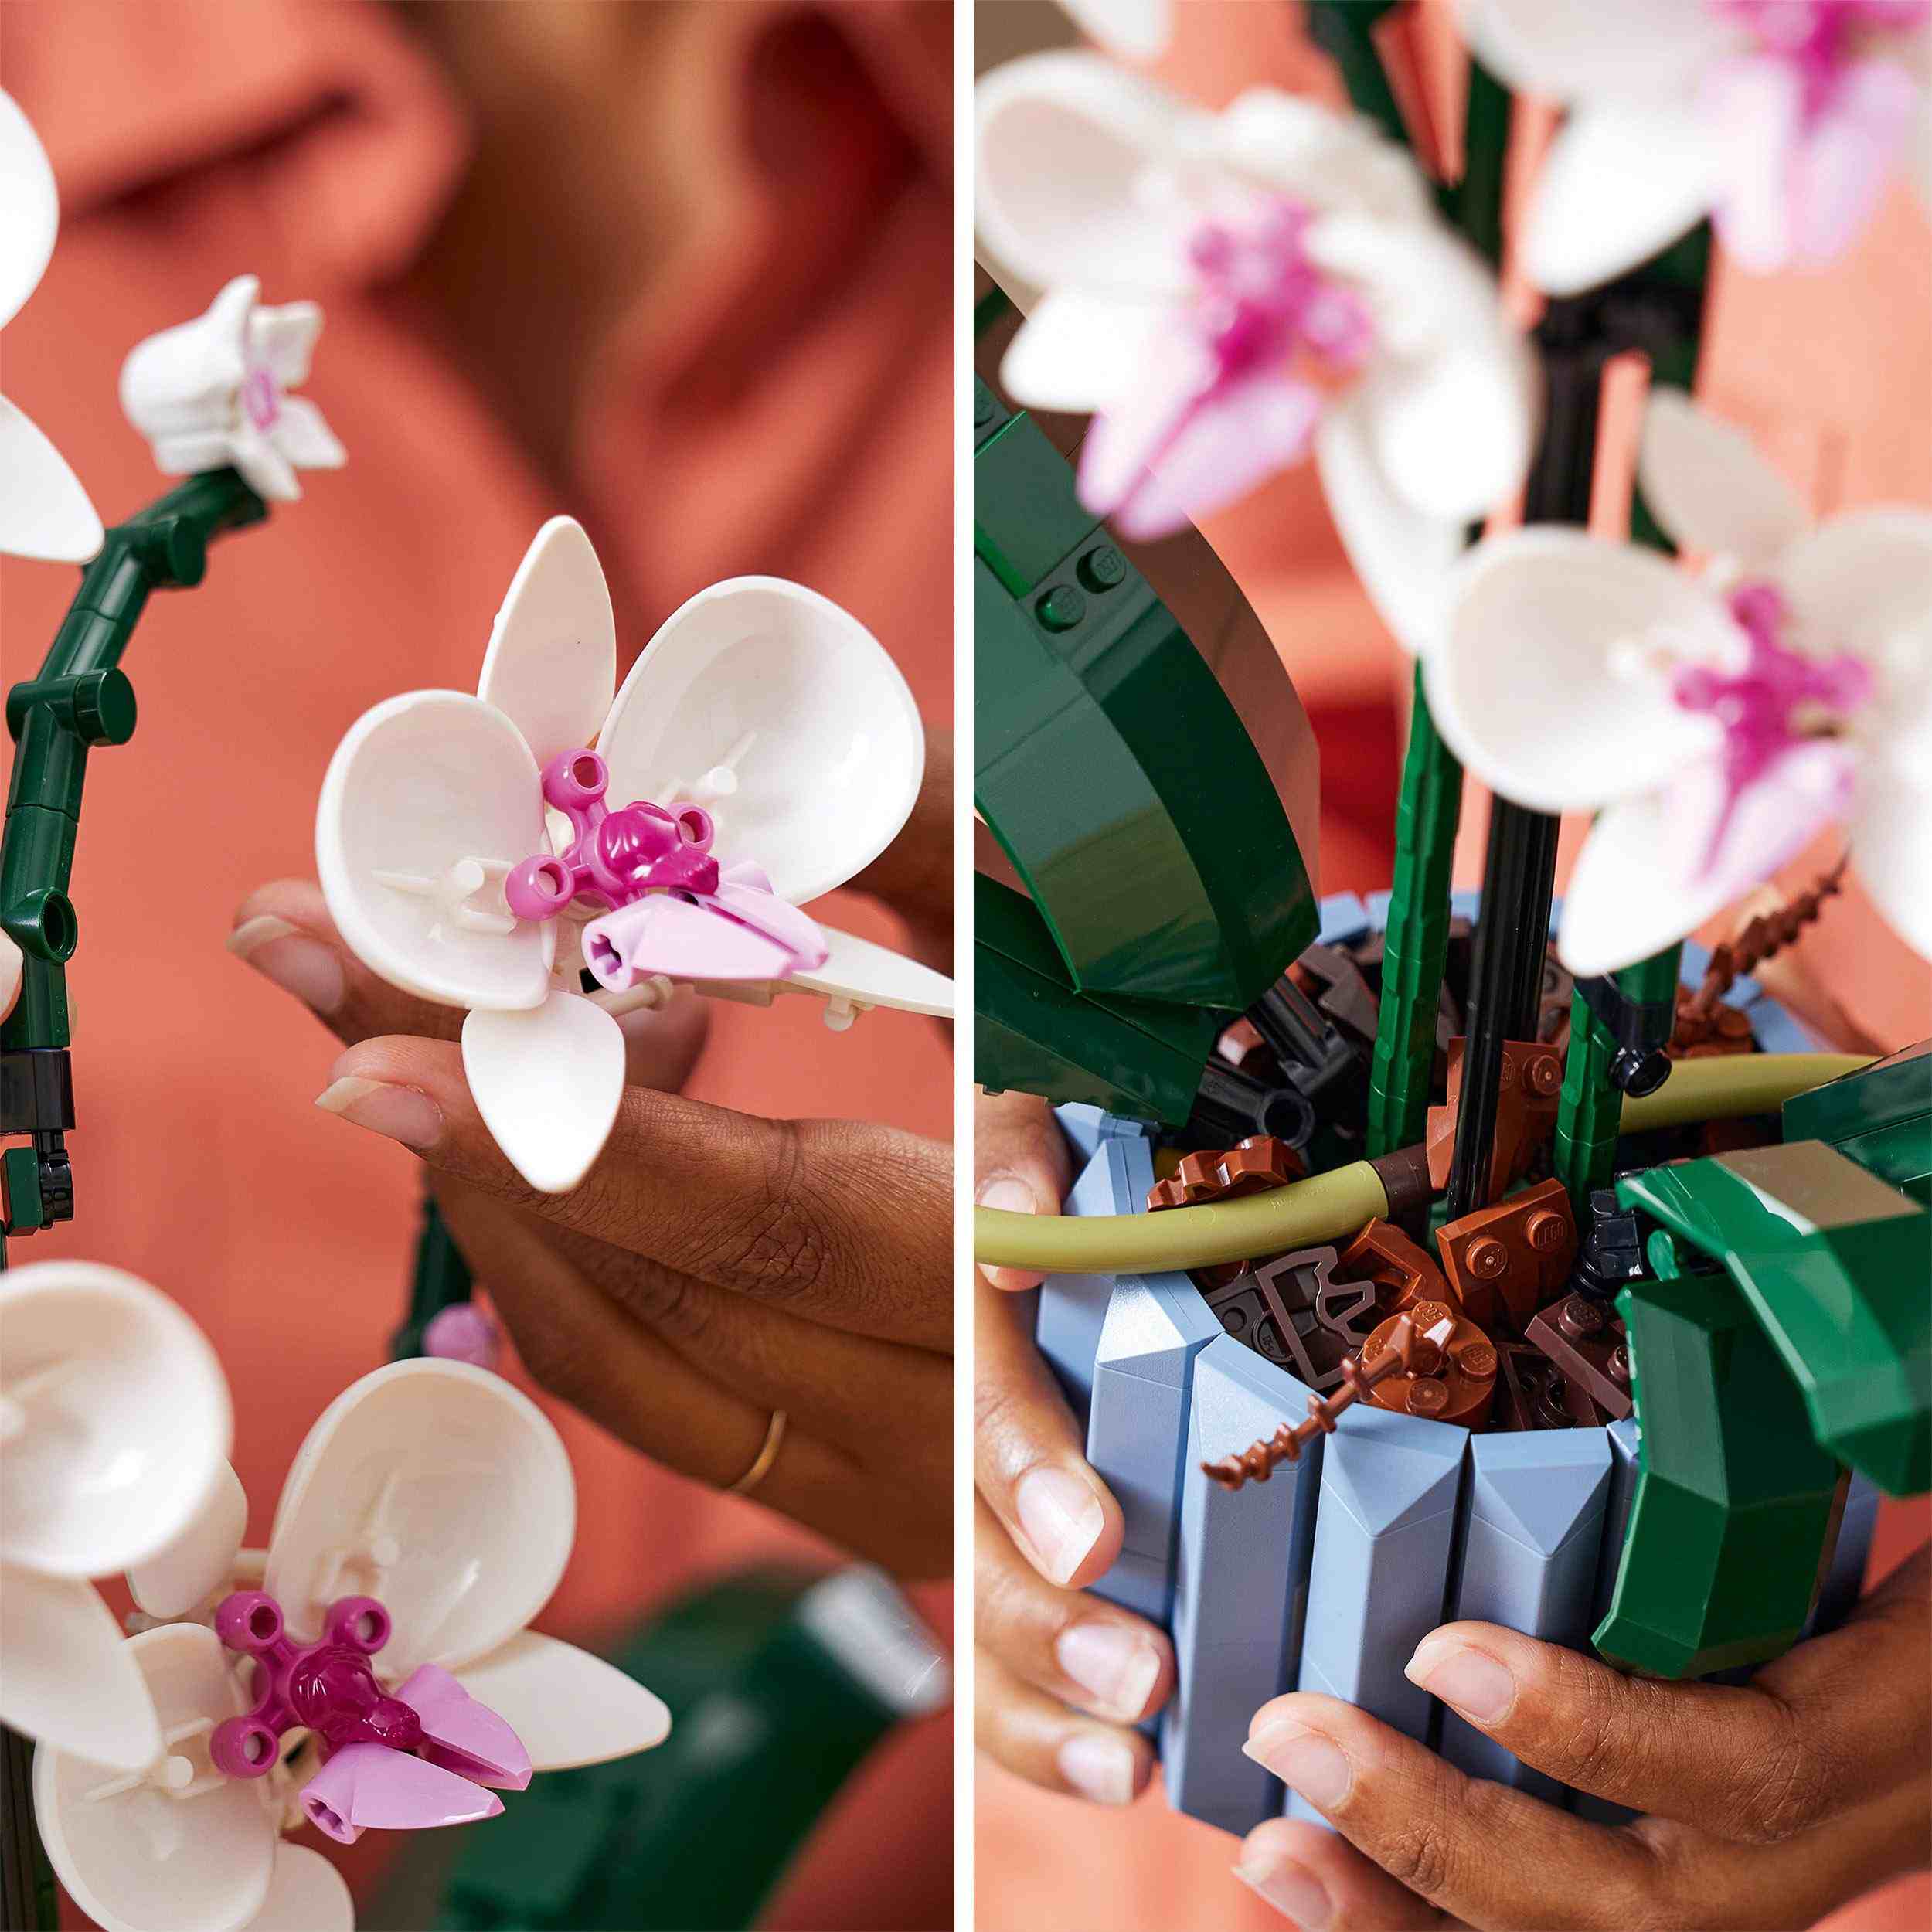 Lego 10311 orchidea, set per adulti da collezione, hobby creativi,  modellino da costruire in mattoncini con fiori finti - Toys Center